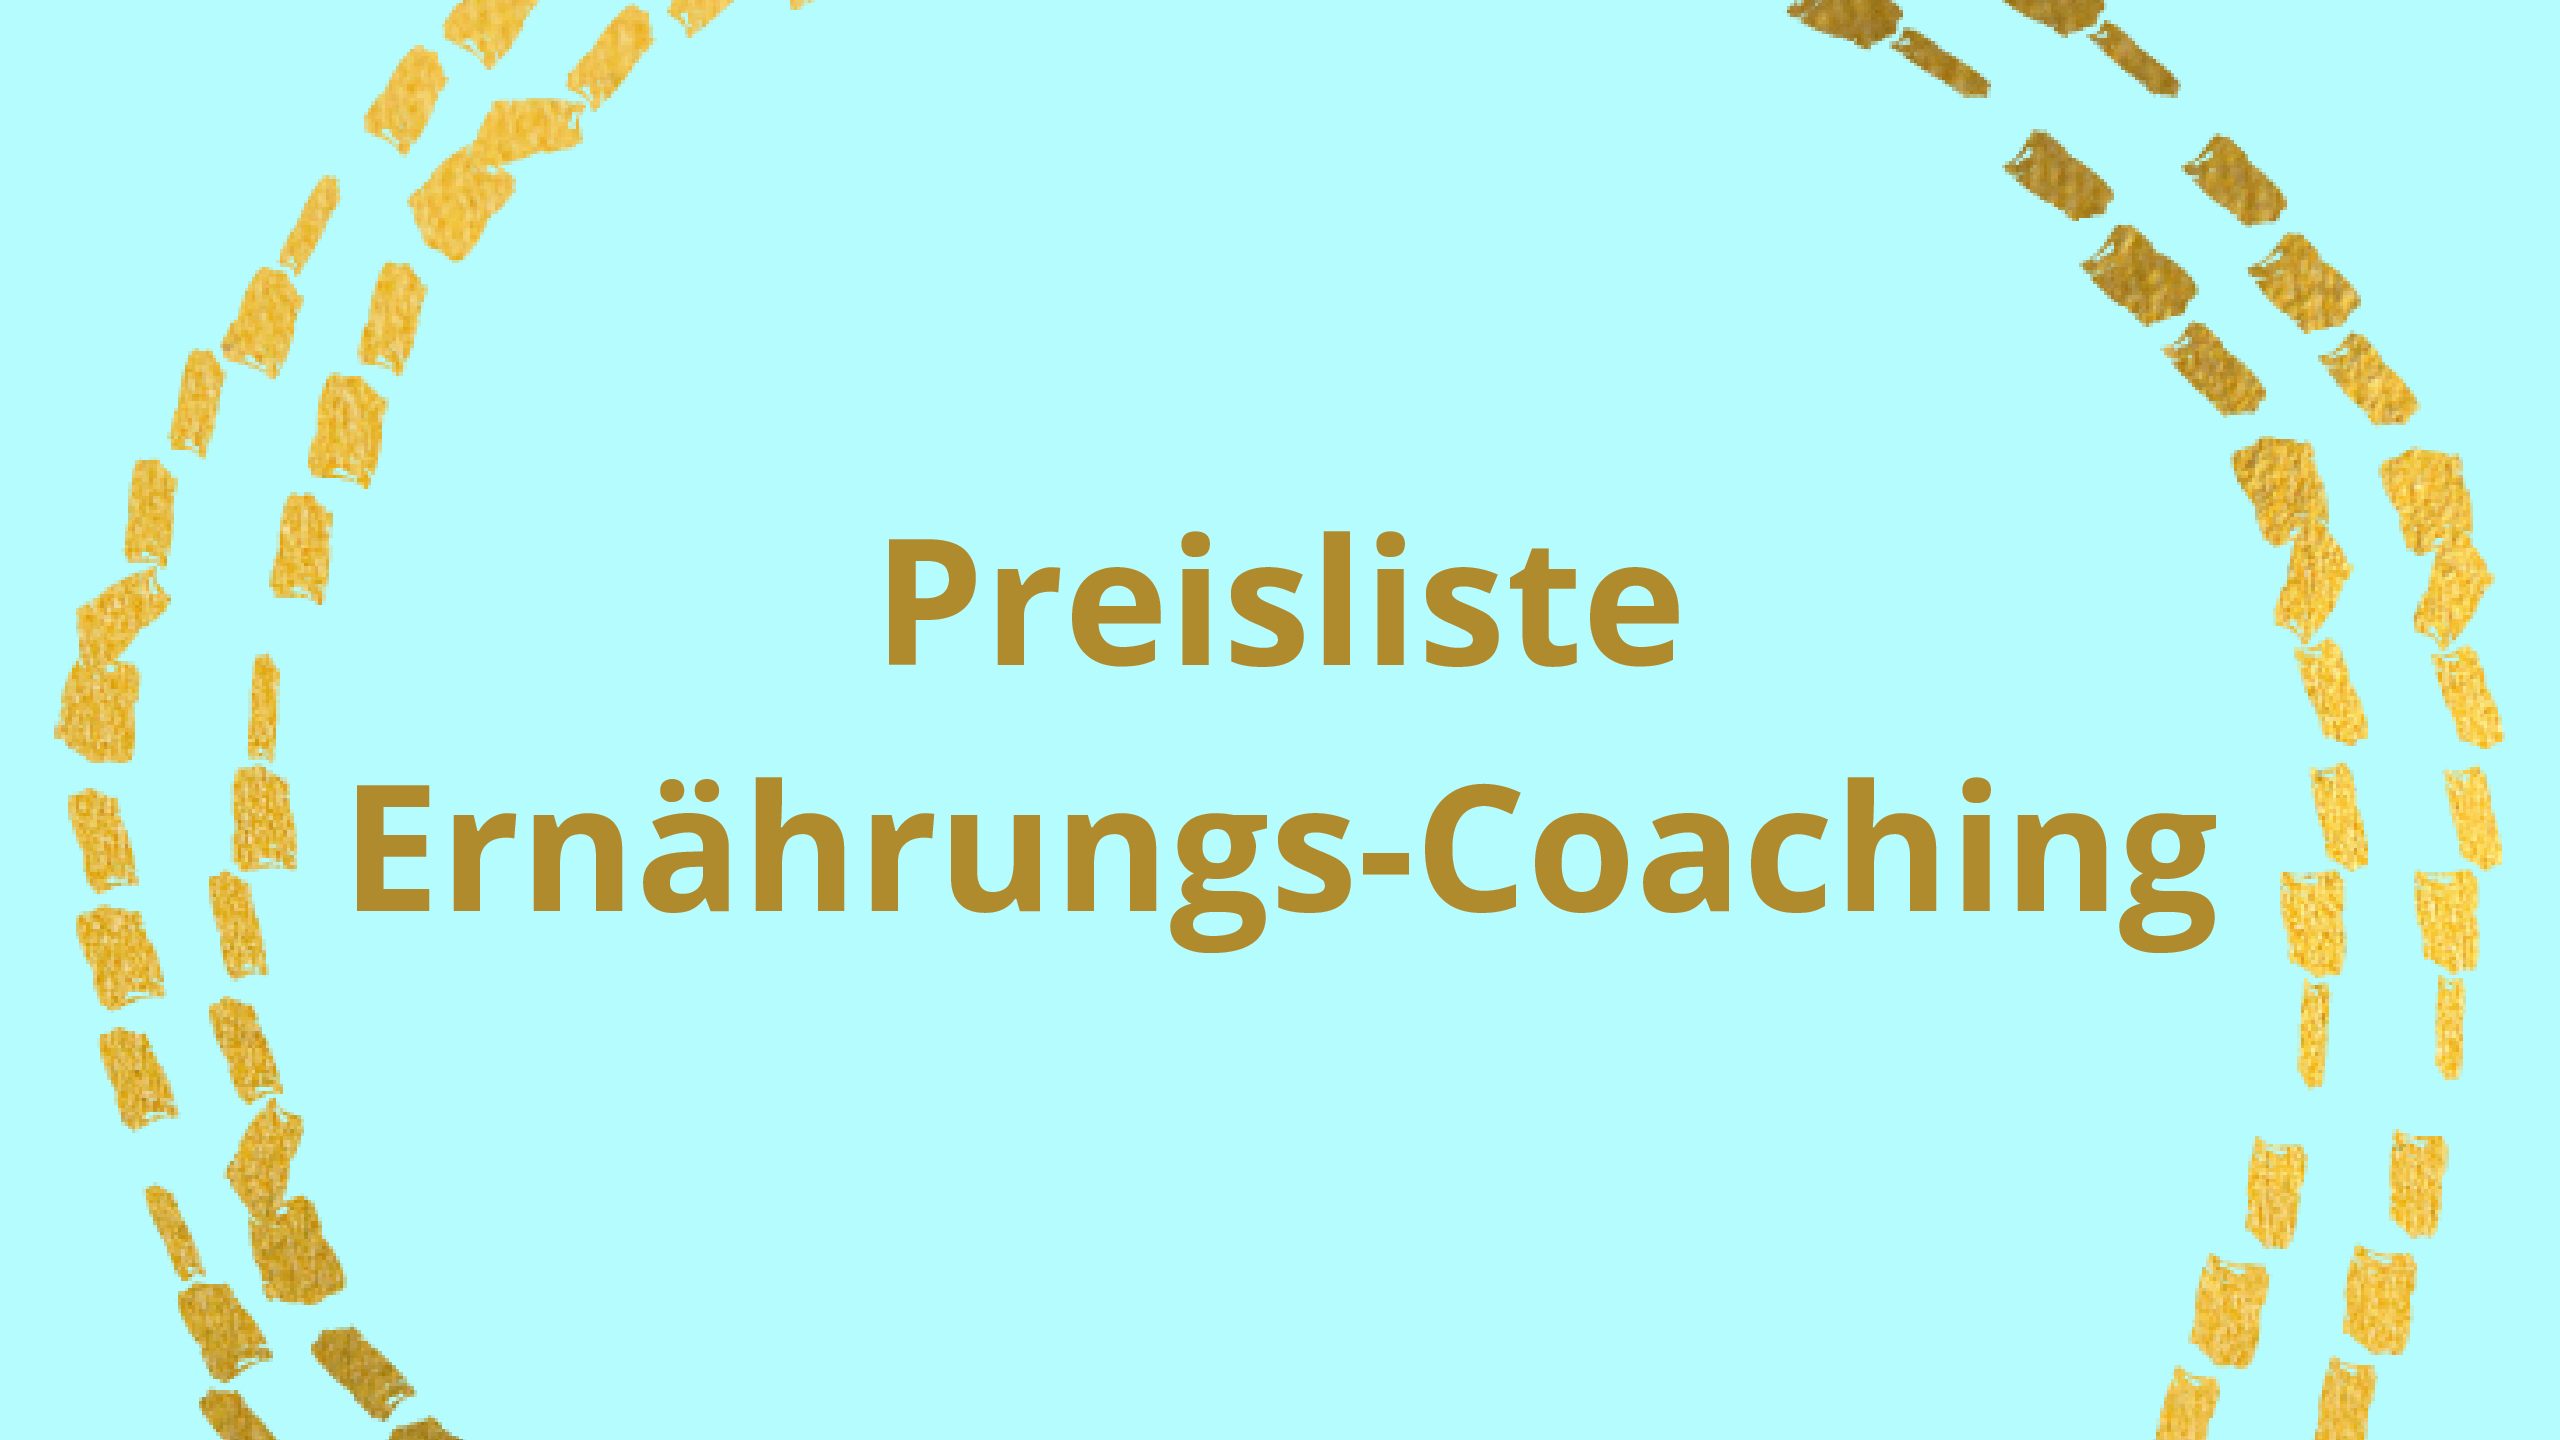 Preisliste Coaching